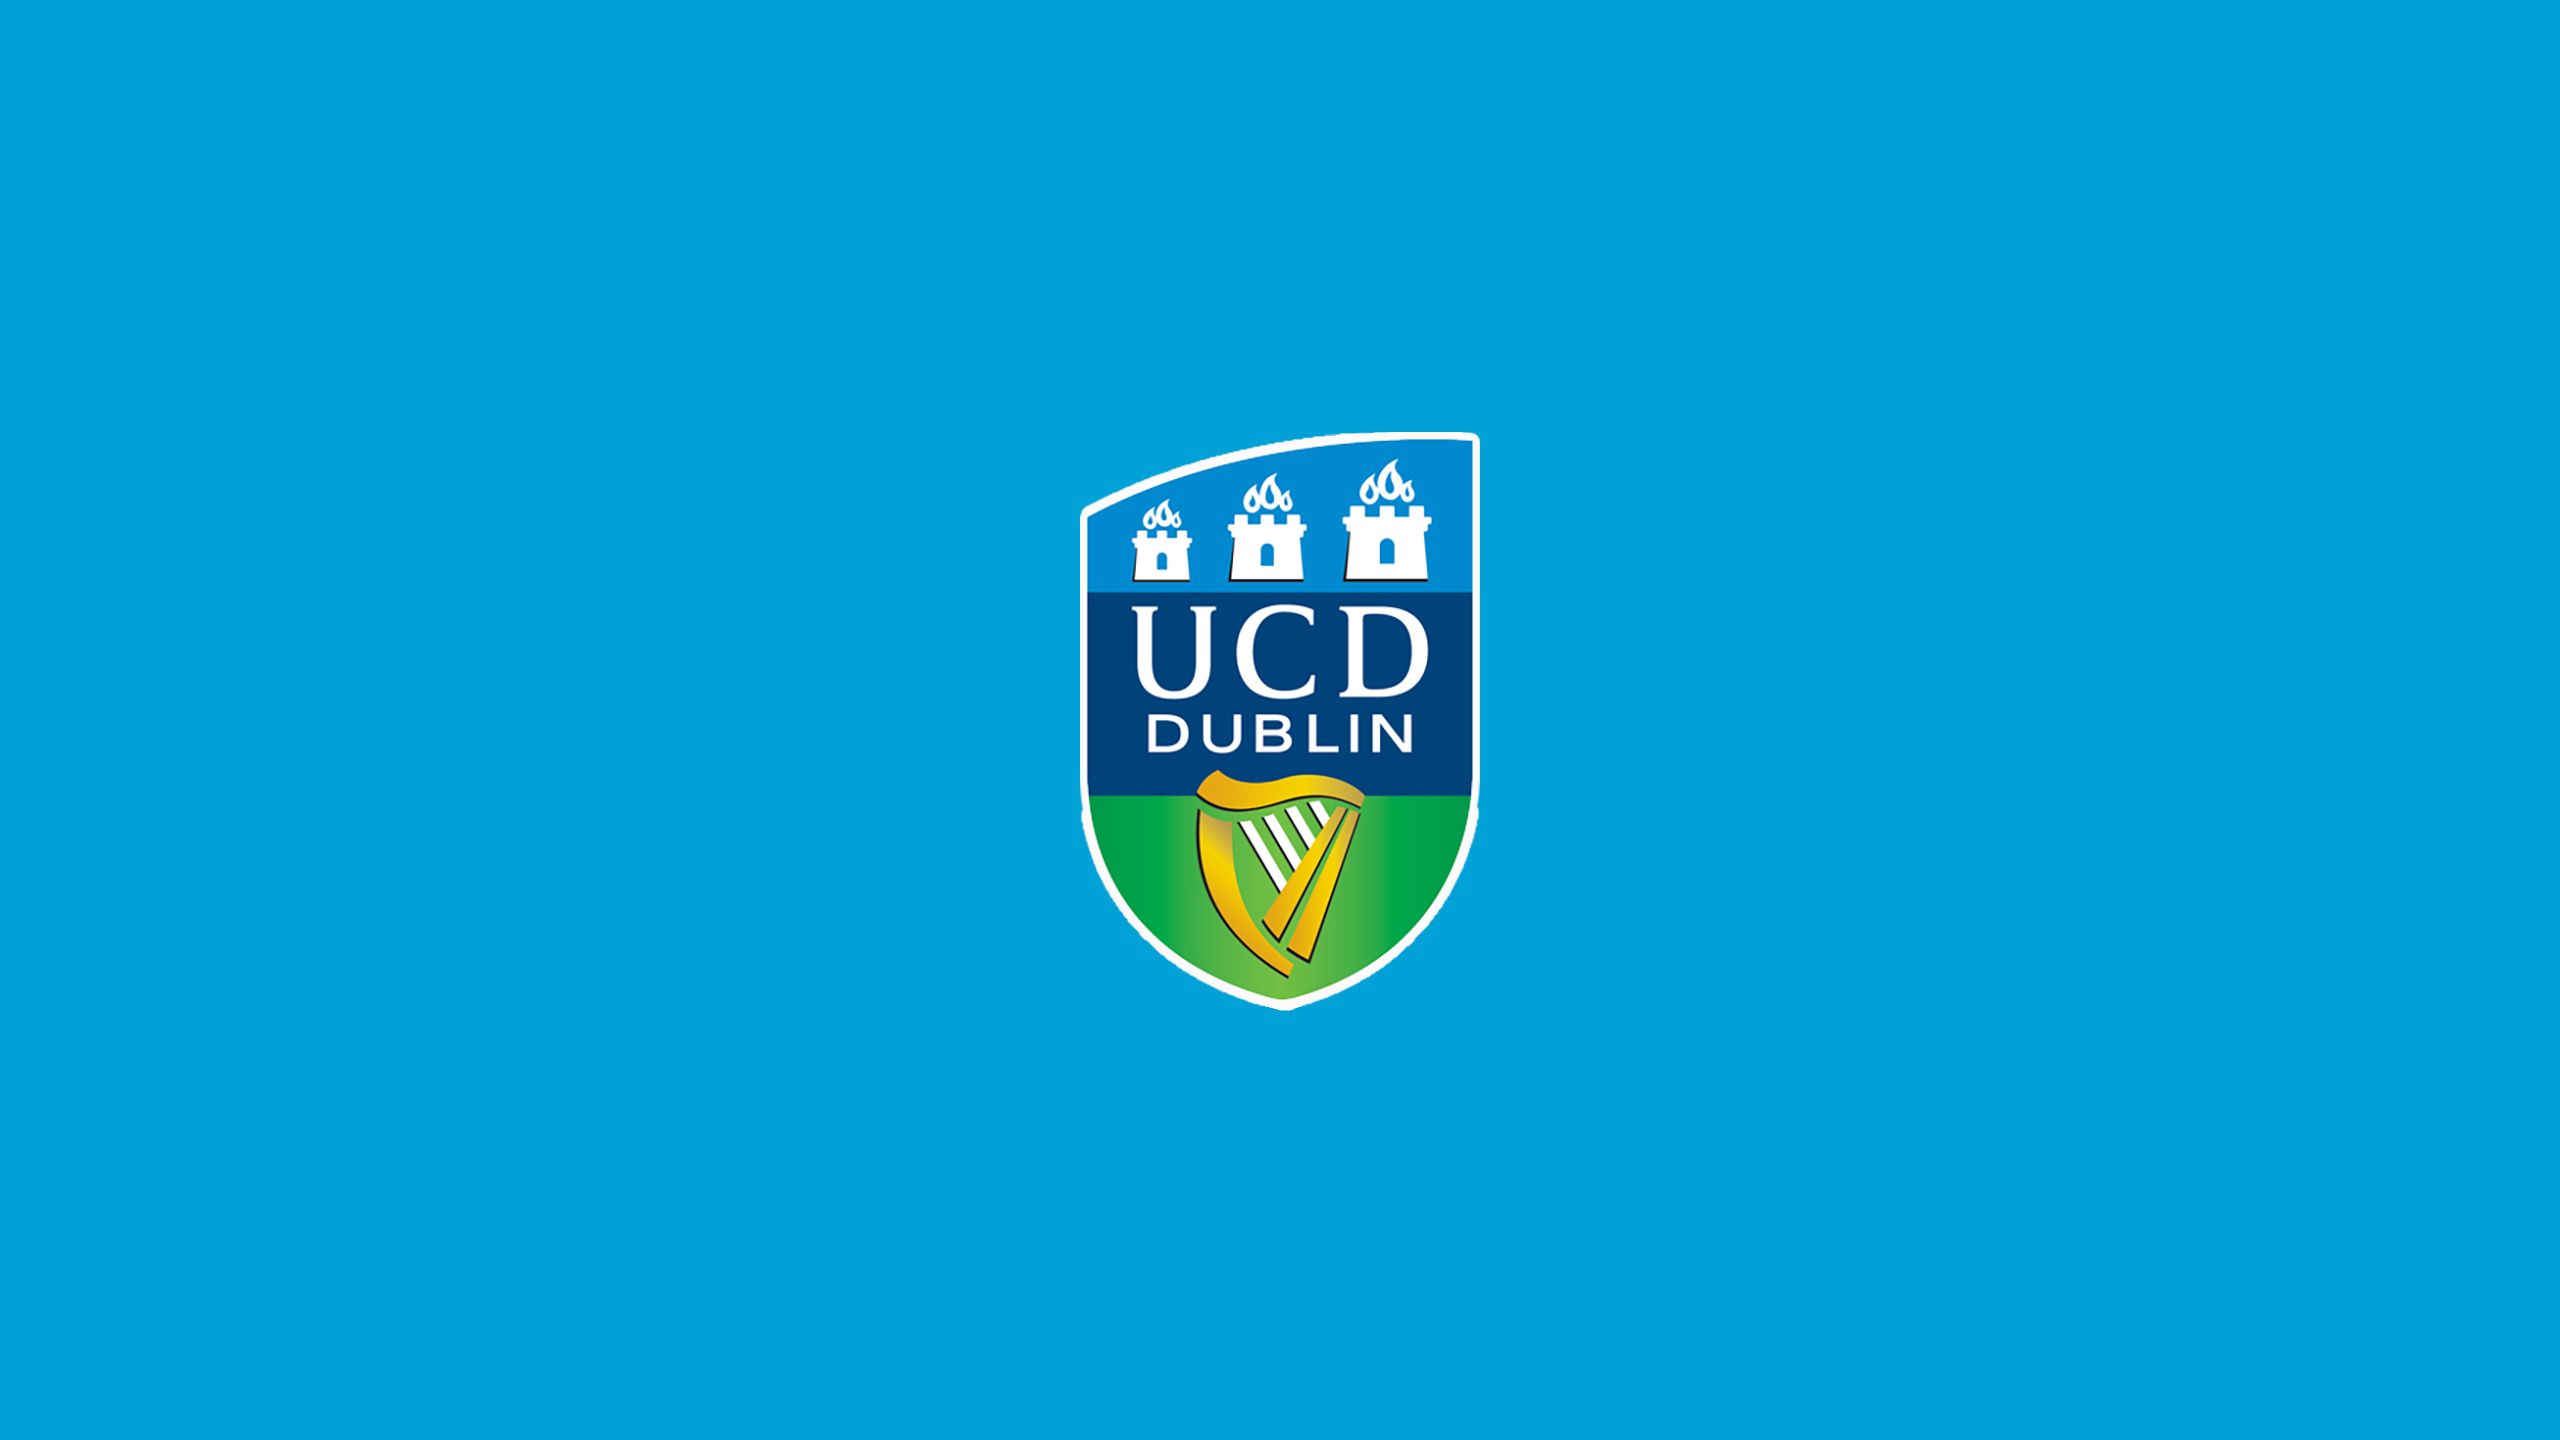 Los mejores fondos de pantalla de Universidad Universidad Dublín Afc para la pantalla del teléfono